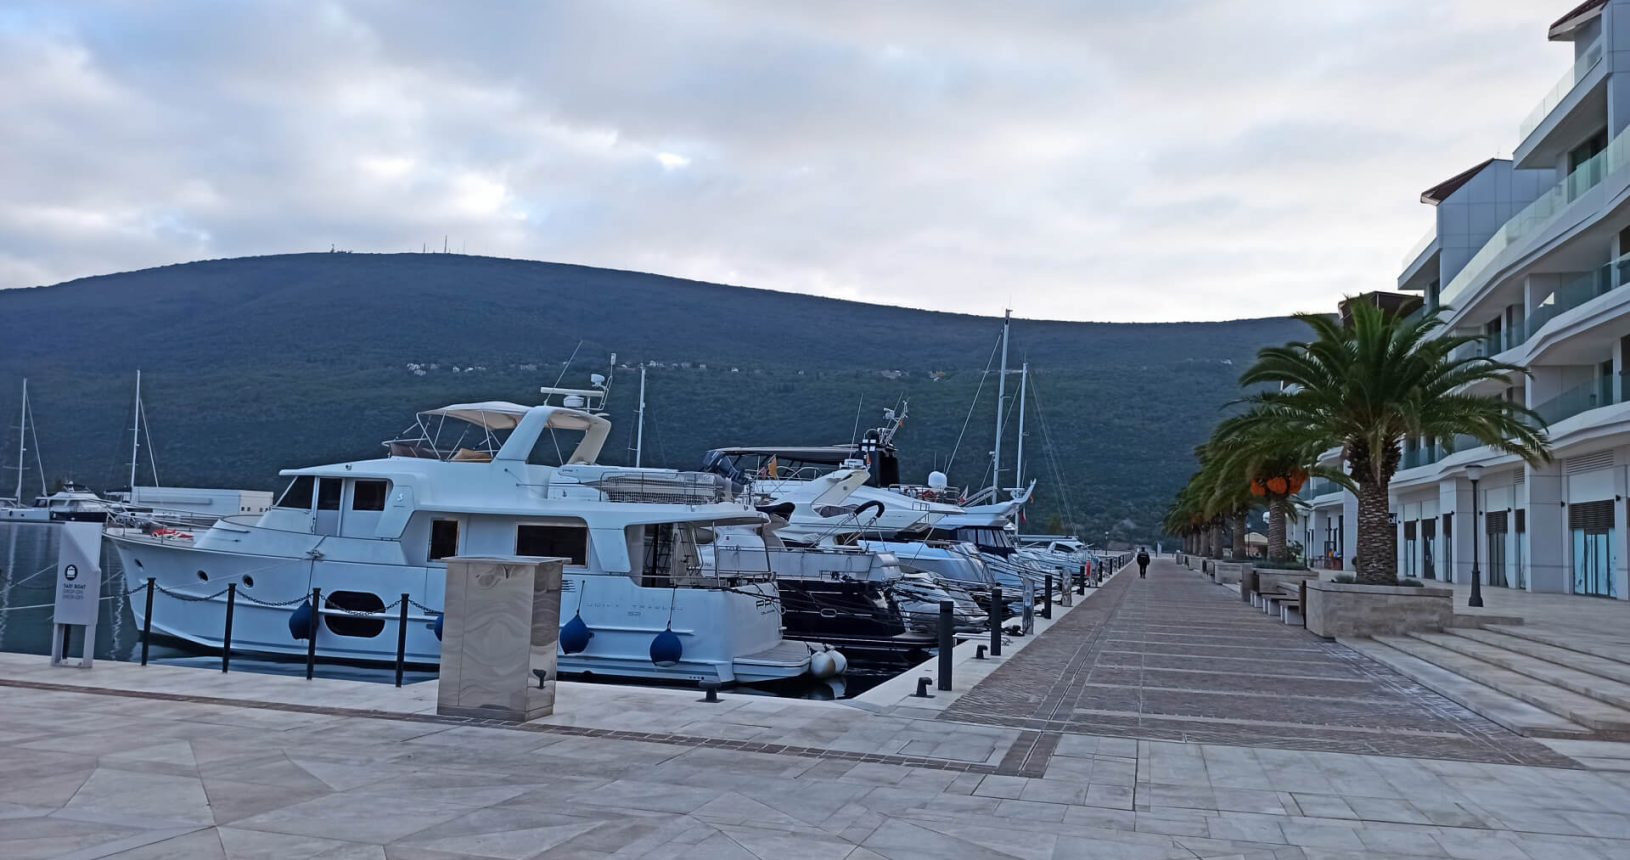 Marina with yachts in Portonovi